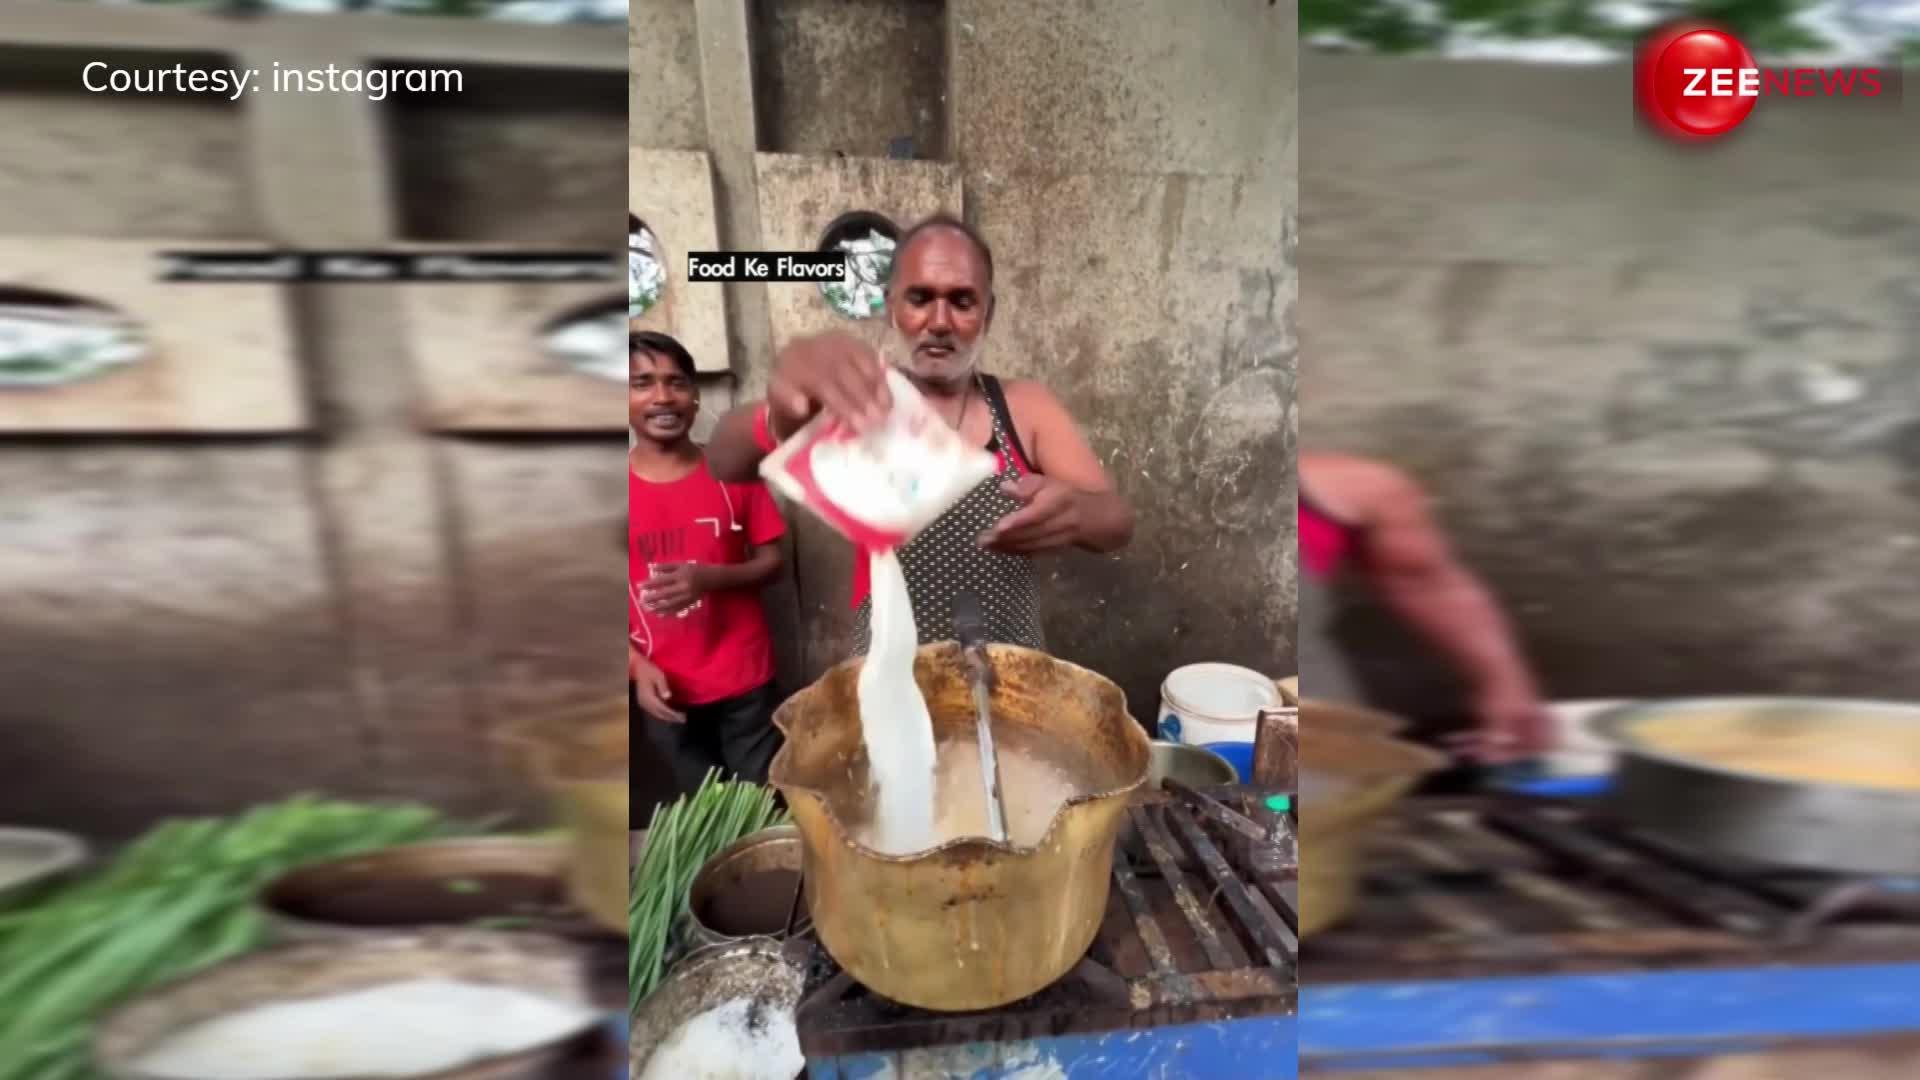 ये क्या टपरी वाले अंकल ने बनाई सब्जी वाली चाय, वीडियो देख भड़क रहे टी लवर्स